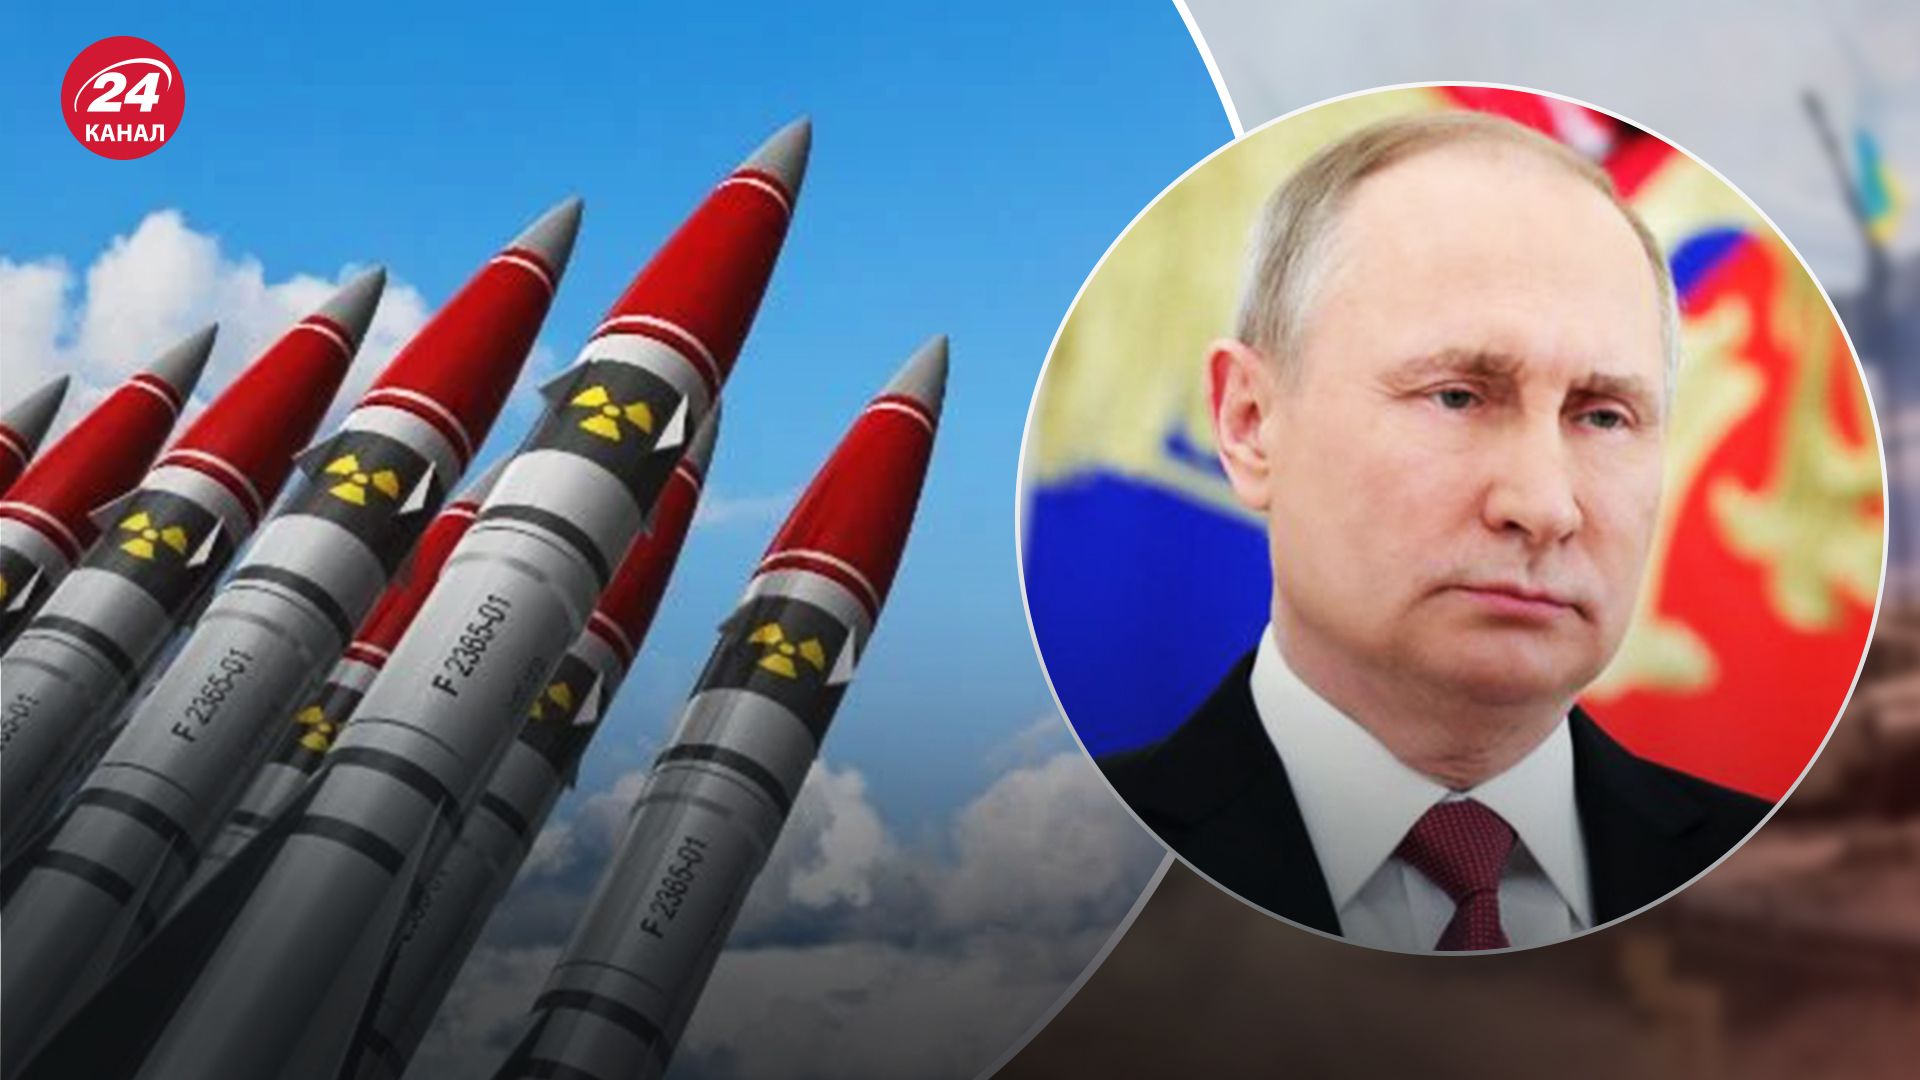  У запада достаточно способов реагировать на ядерные спекуляции России